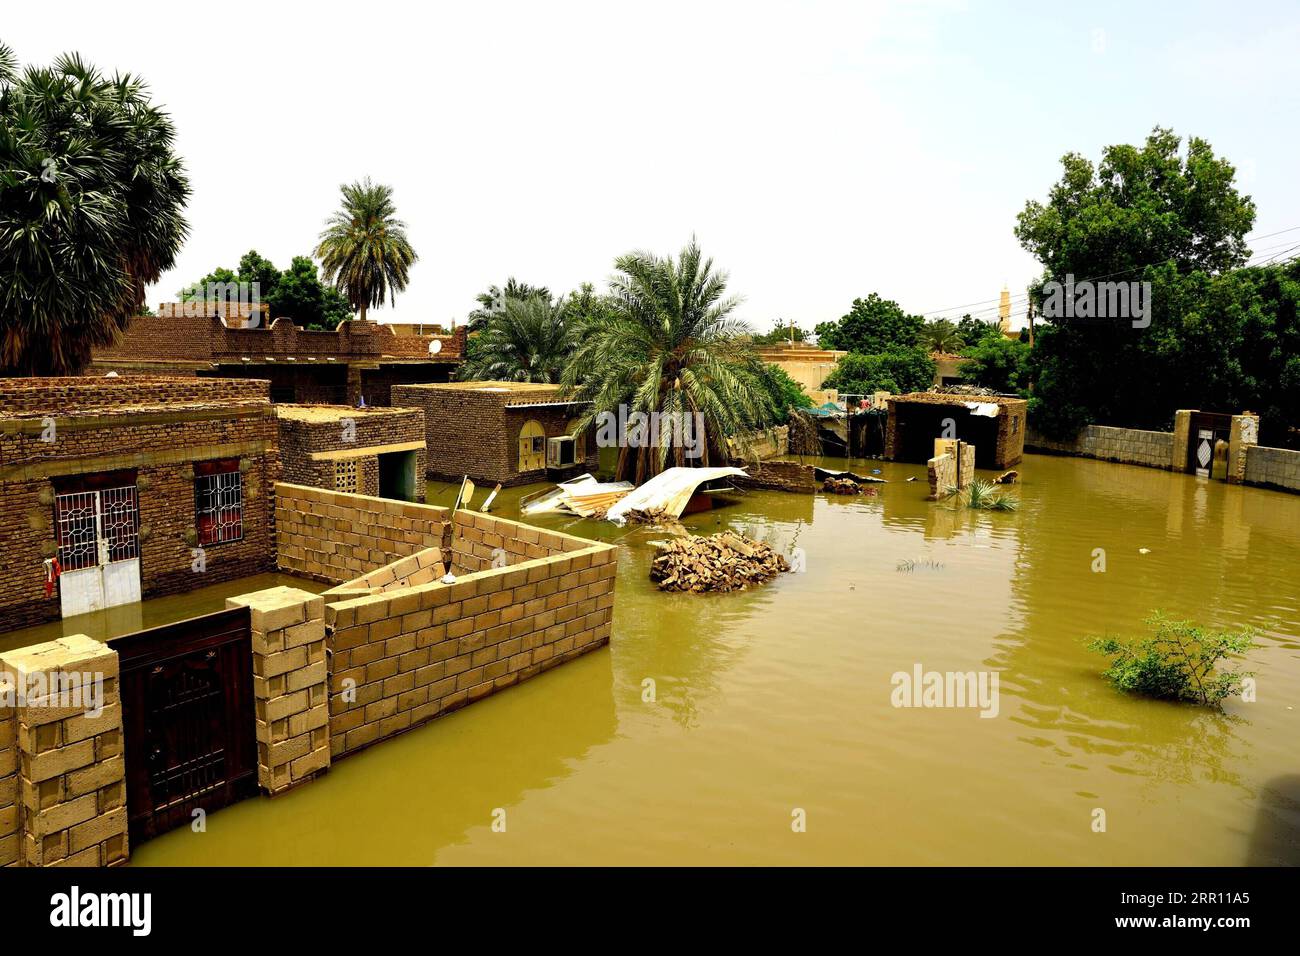 200831 -- KHARTOUM, 31 agosto 2020 -- foto scattata il 31 agosto 2020 mostra le case allagate nell'area di al-Kadaro, a nord della capitale Khartoum, Sudan. Domenica, il primo ministro sudanese Abdalla Hamdok ha dichiarato che le inondazioni di quest'anno hanno provocato perdite catastrofiche e dolorose di vite umane e di proprietà. Secondo il ministero dell'irrigazione e delle risorse idriche, l'acqua del Nilo nella maggior parte delle sorgenti superiori ha raggiunto livelli senza precedenti. Foto di /Xinhua SUDAN-KHARTOUM-FLOOD MohamedxKhidir PUBLICATIONxNOTxINxCHN Foto Stock